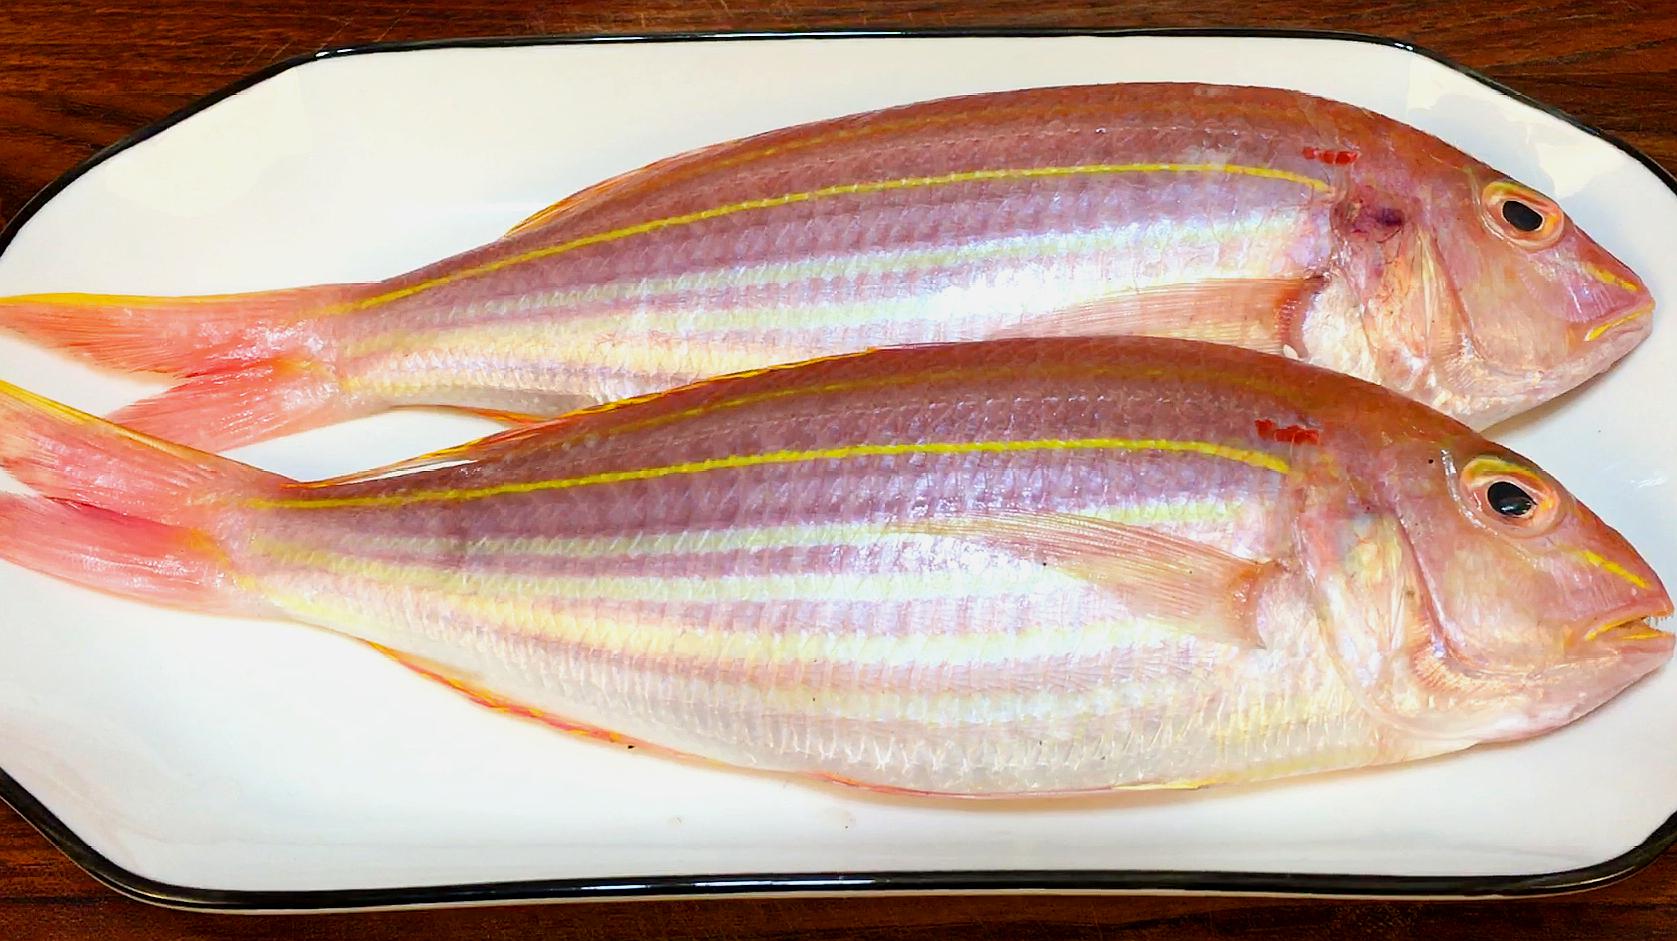 常食用的海鱼品种图片